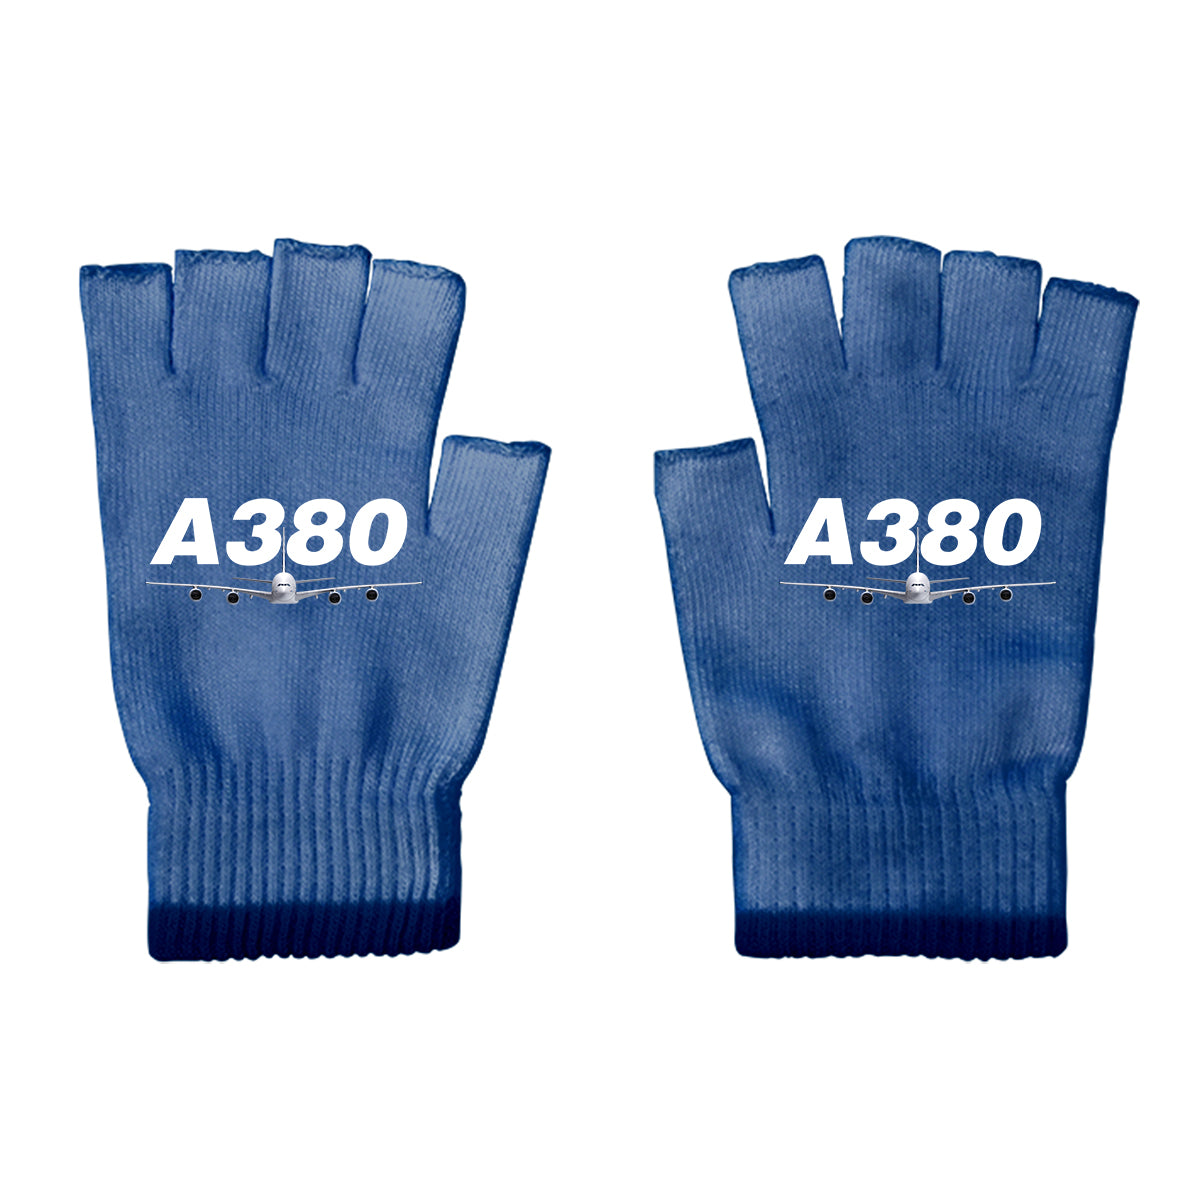 Super Airbus A380 Designed Cut Gloves